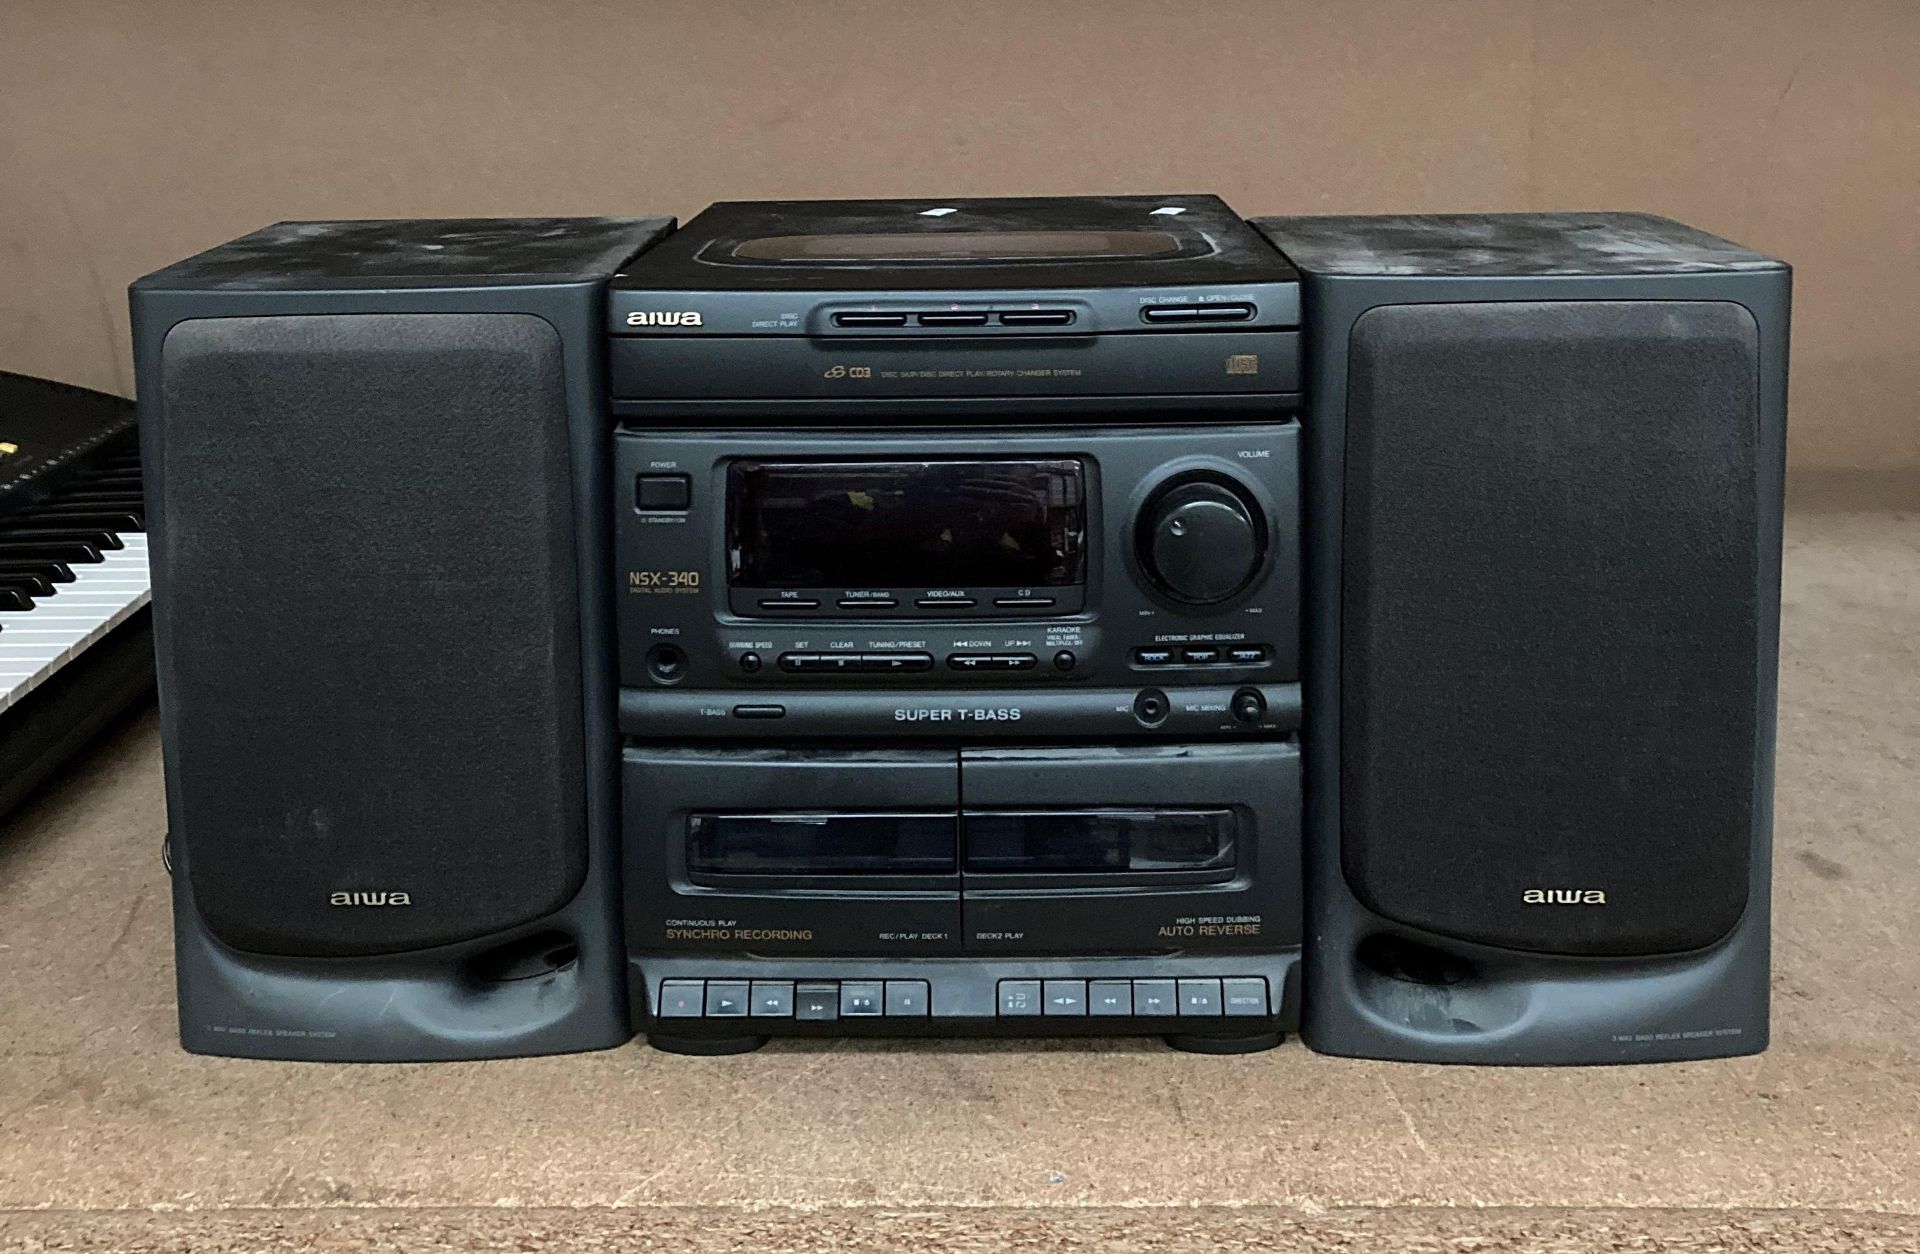 AIWA NSX-340 digital audio system with a three CD player,